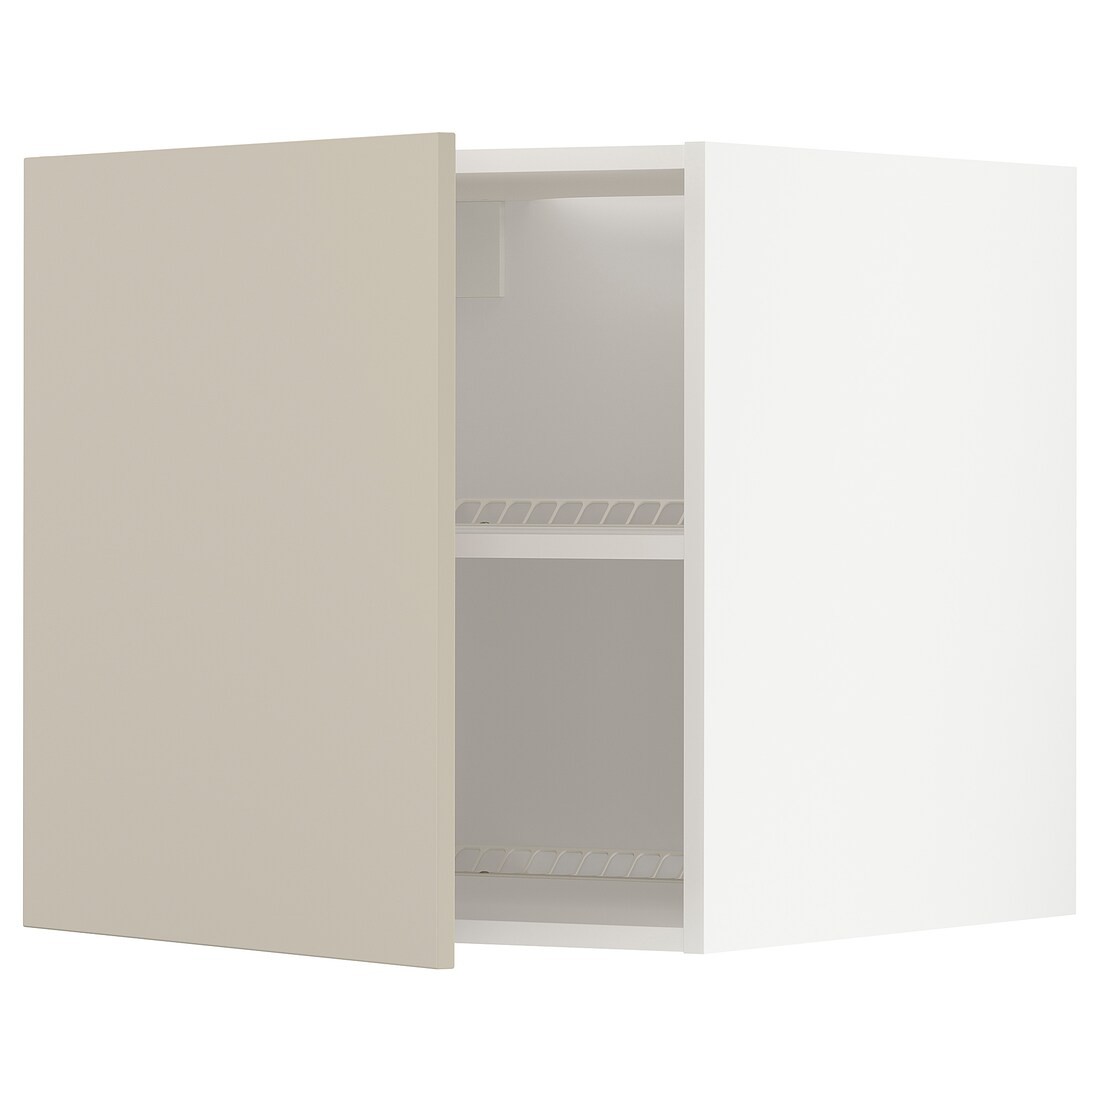 METOD МЕТОД Верхня шафа для холодильника / морозильника, білий / Havstorp бежевий, 60x60 см